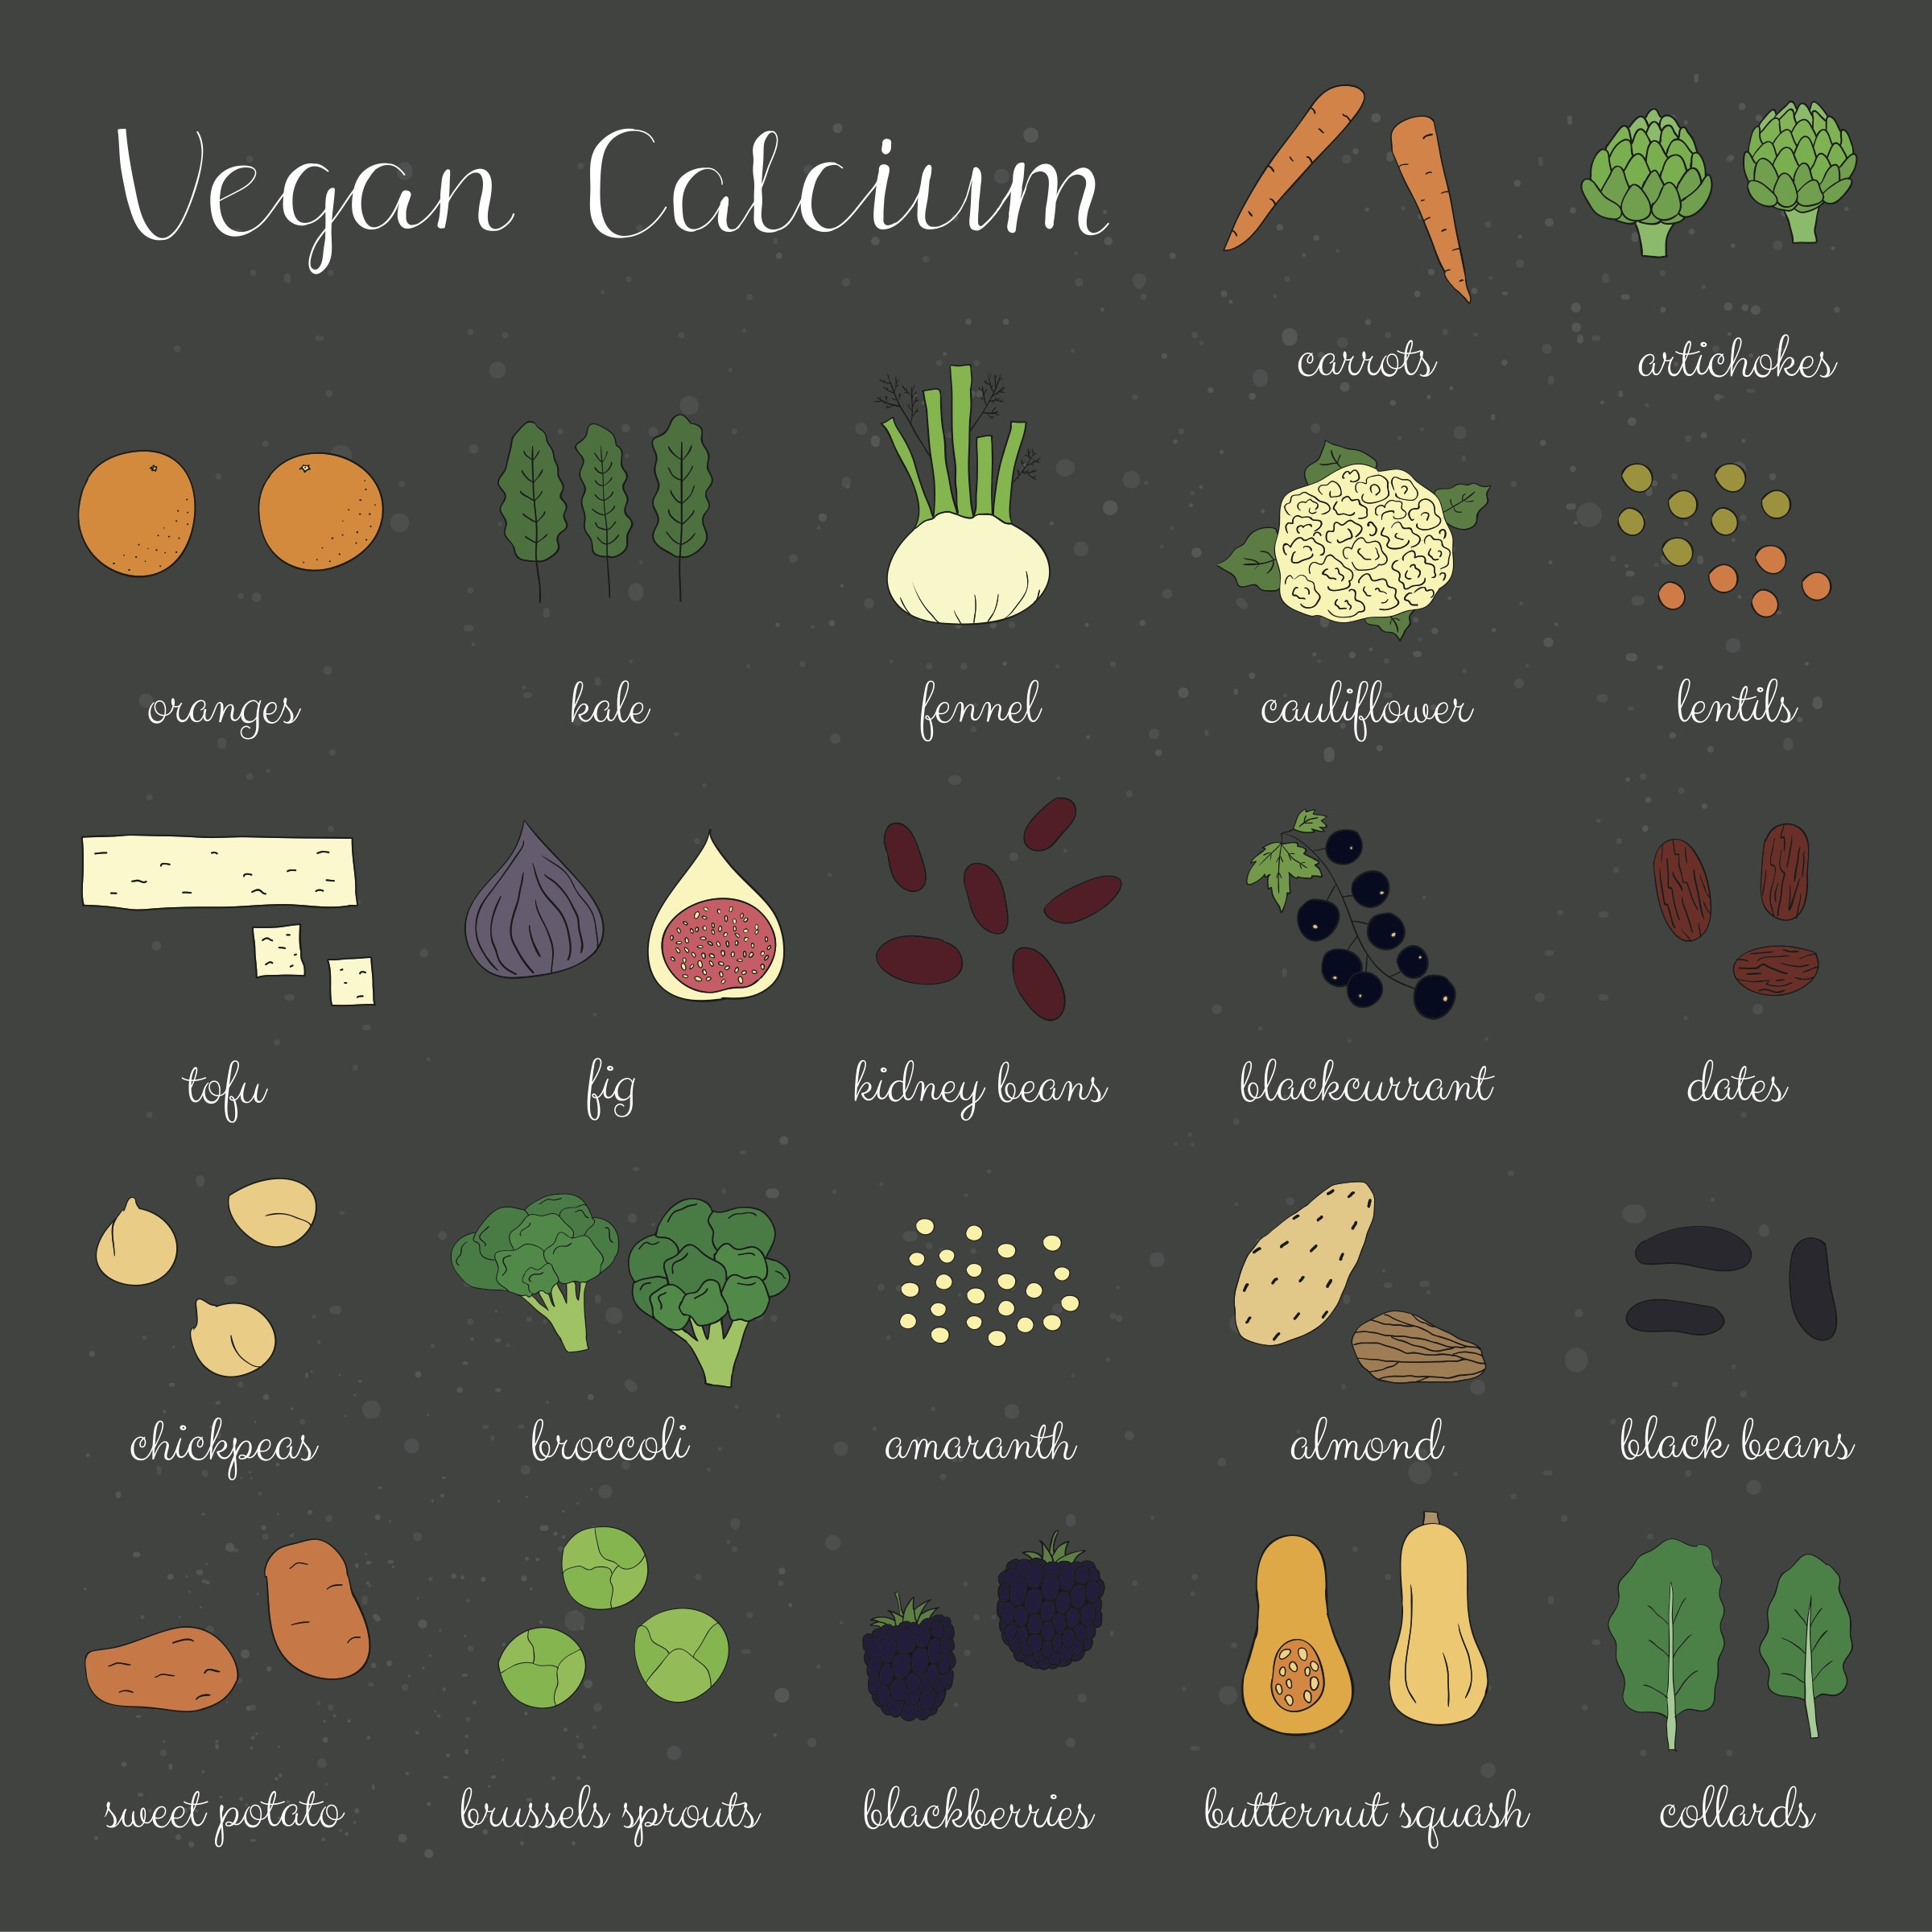 Vegan sources of calcium